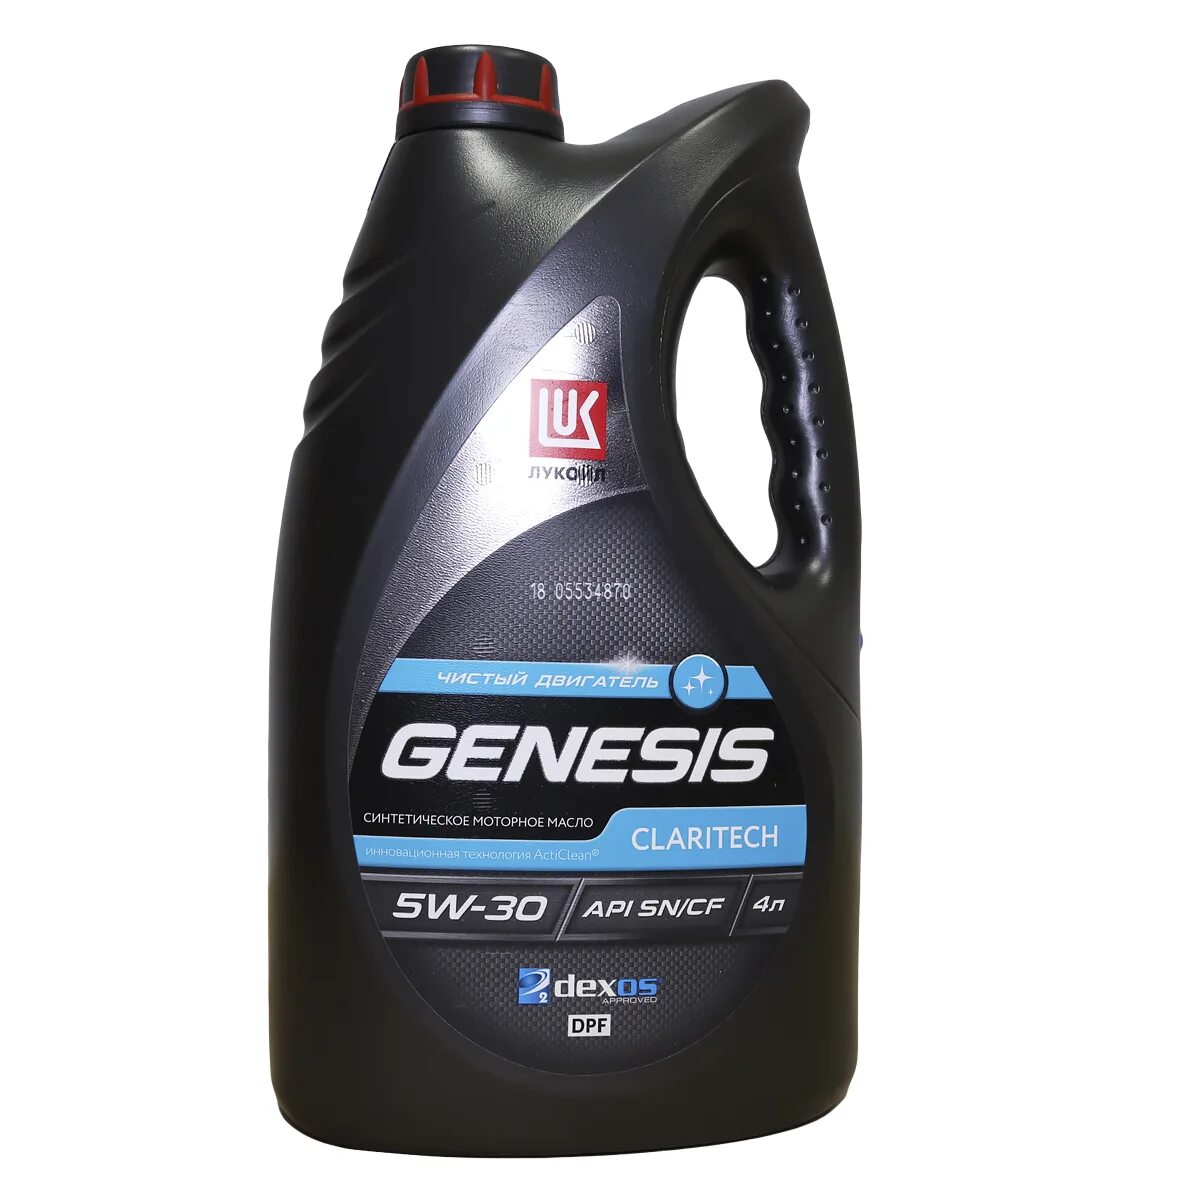 Lukoil Genesis 5w30. Lukoil Genesis Claritech 5w-30. Genesis Armortech 5w-30. Lukoil Genesis 5w30 Genesis. Масло лукойл dx1